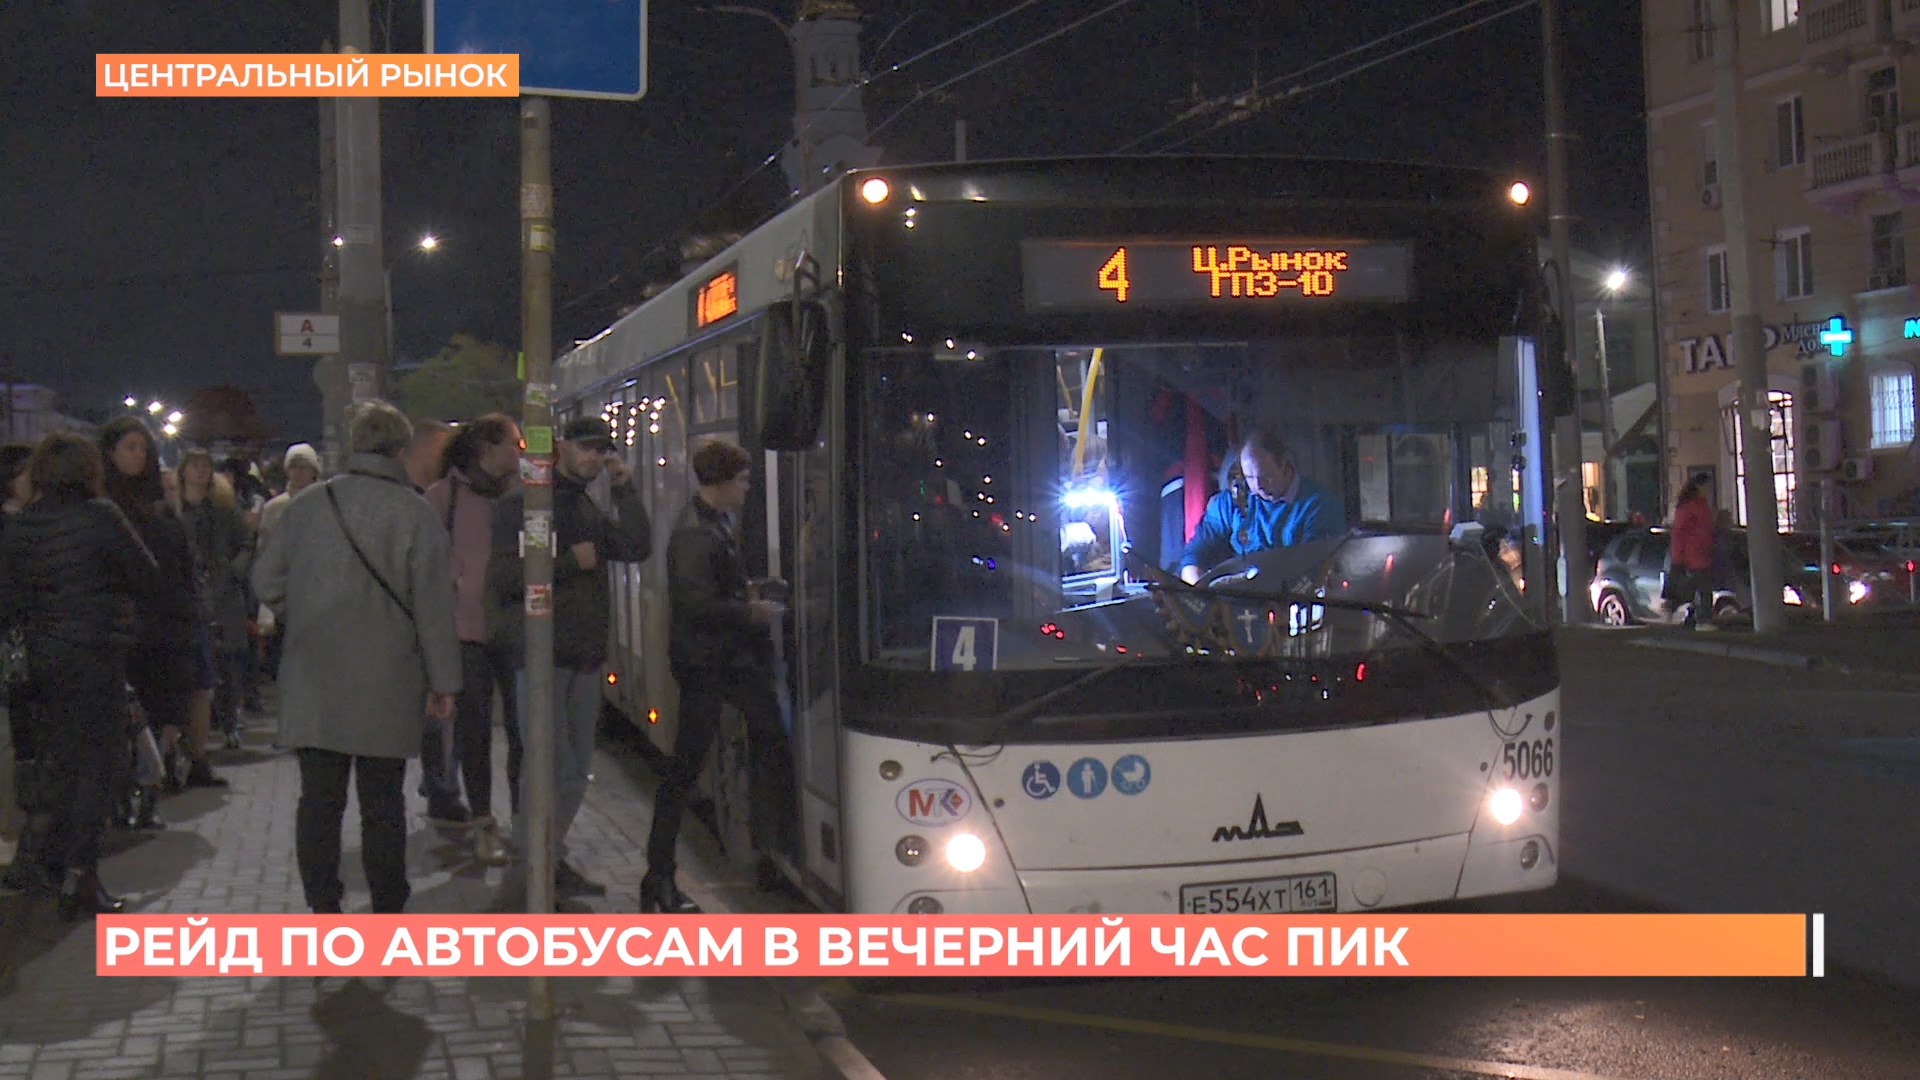 Департамент транспорта проверил в Ростове соответствие автобусных рейсов расписанию